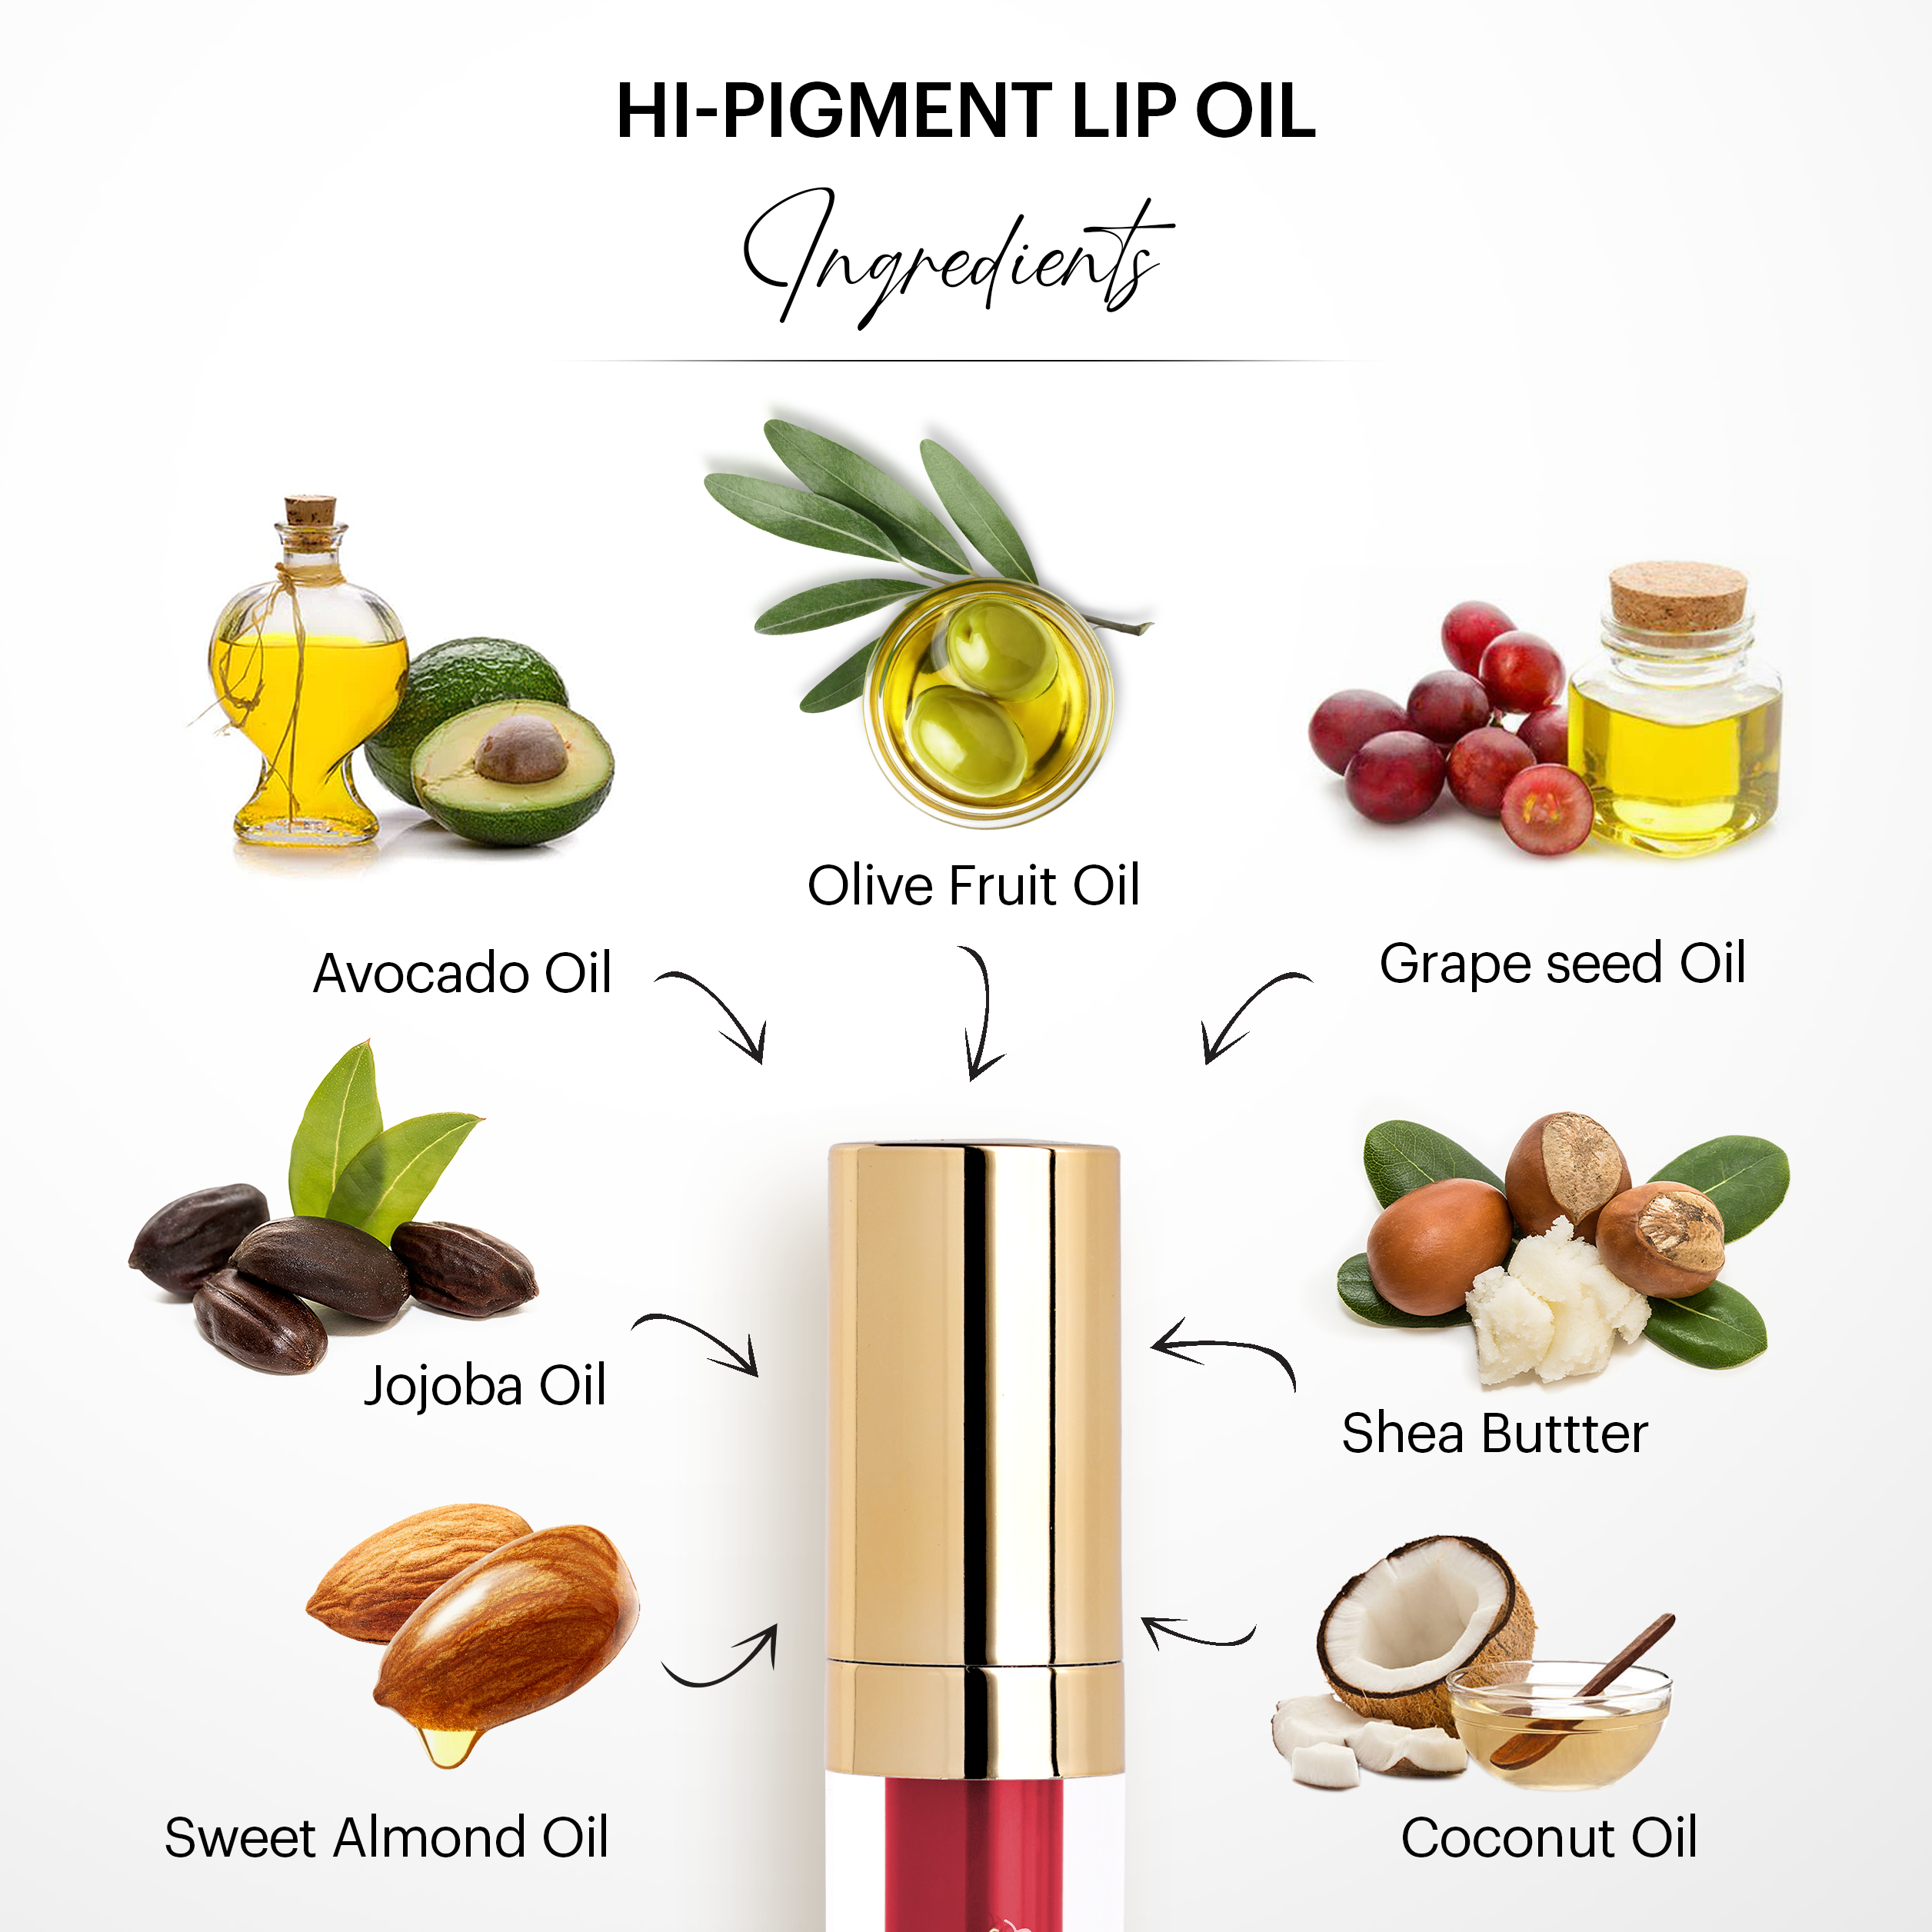 Hi-Pigment Lip Oil: Diva 01